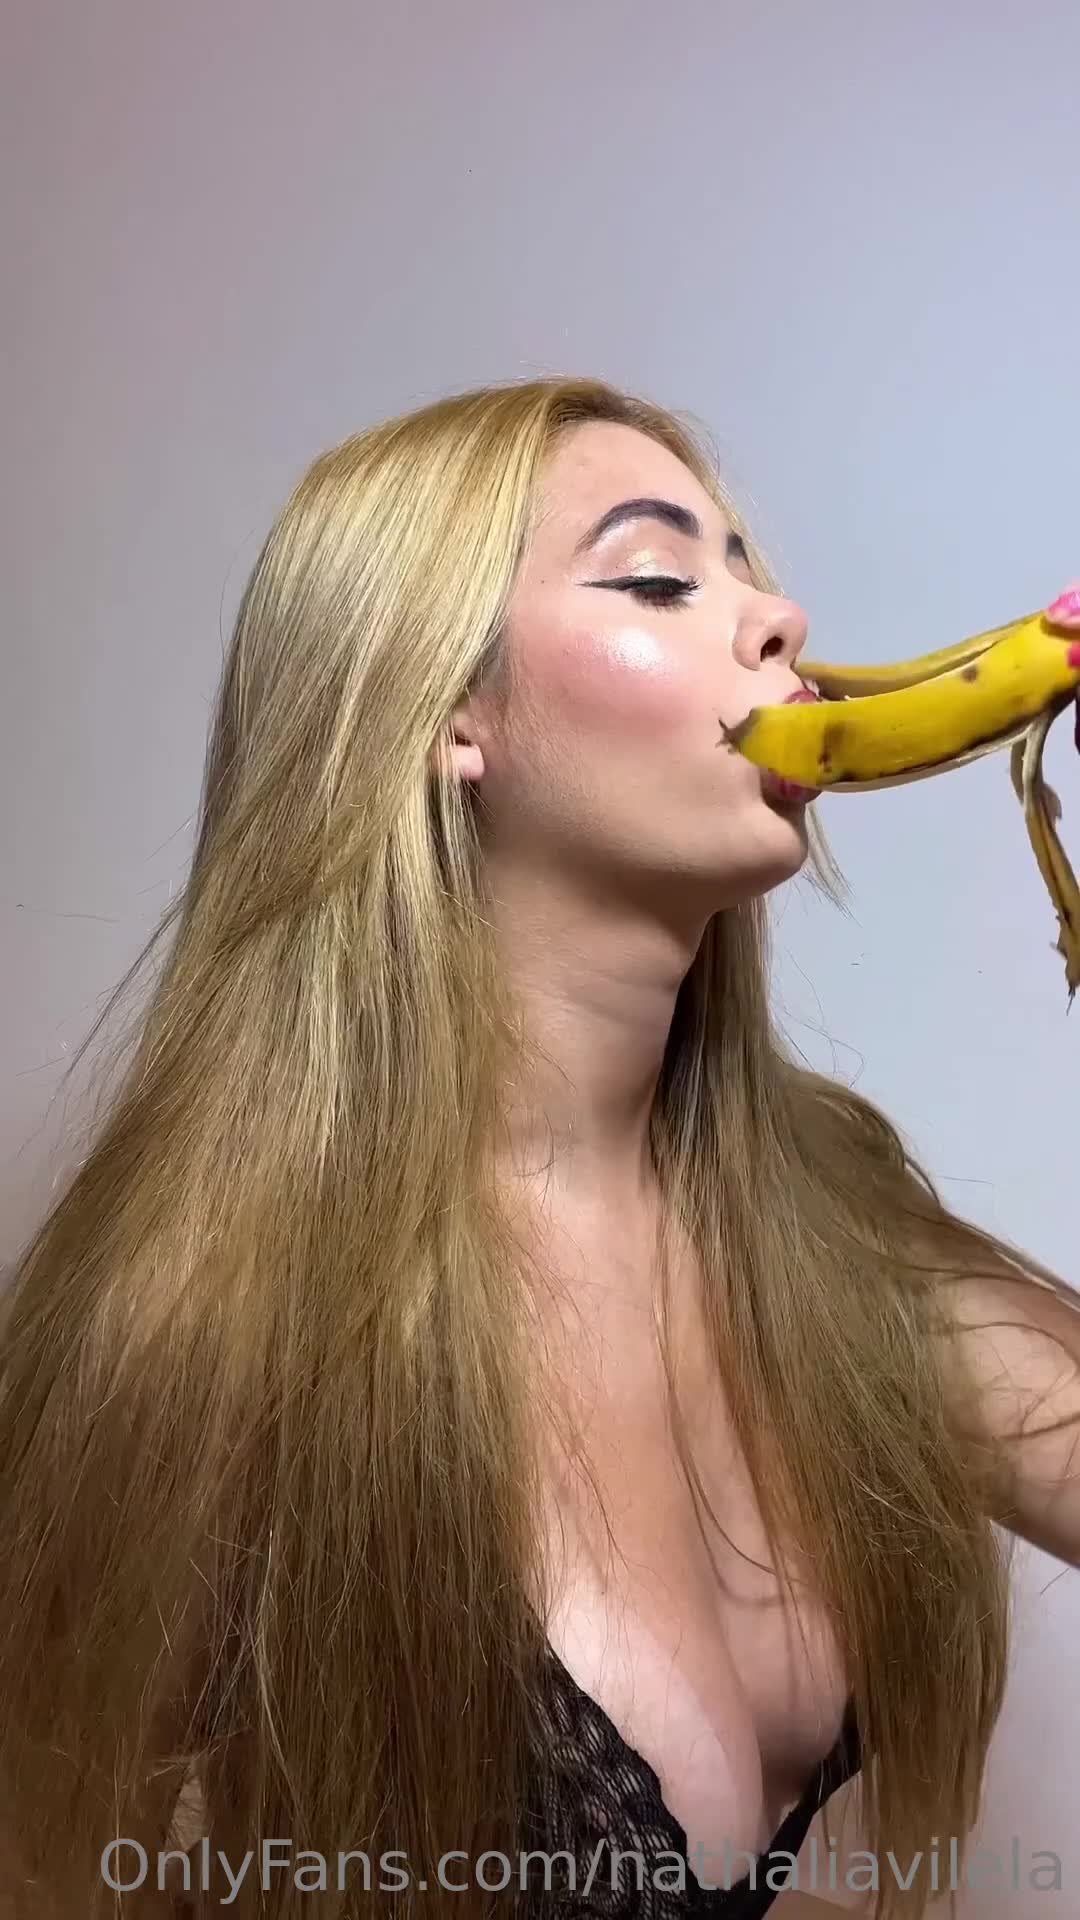 xxx Nathalia Vilela chupando a banana toda sensual mulher pelada xvideos